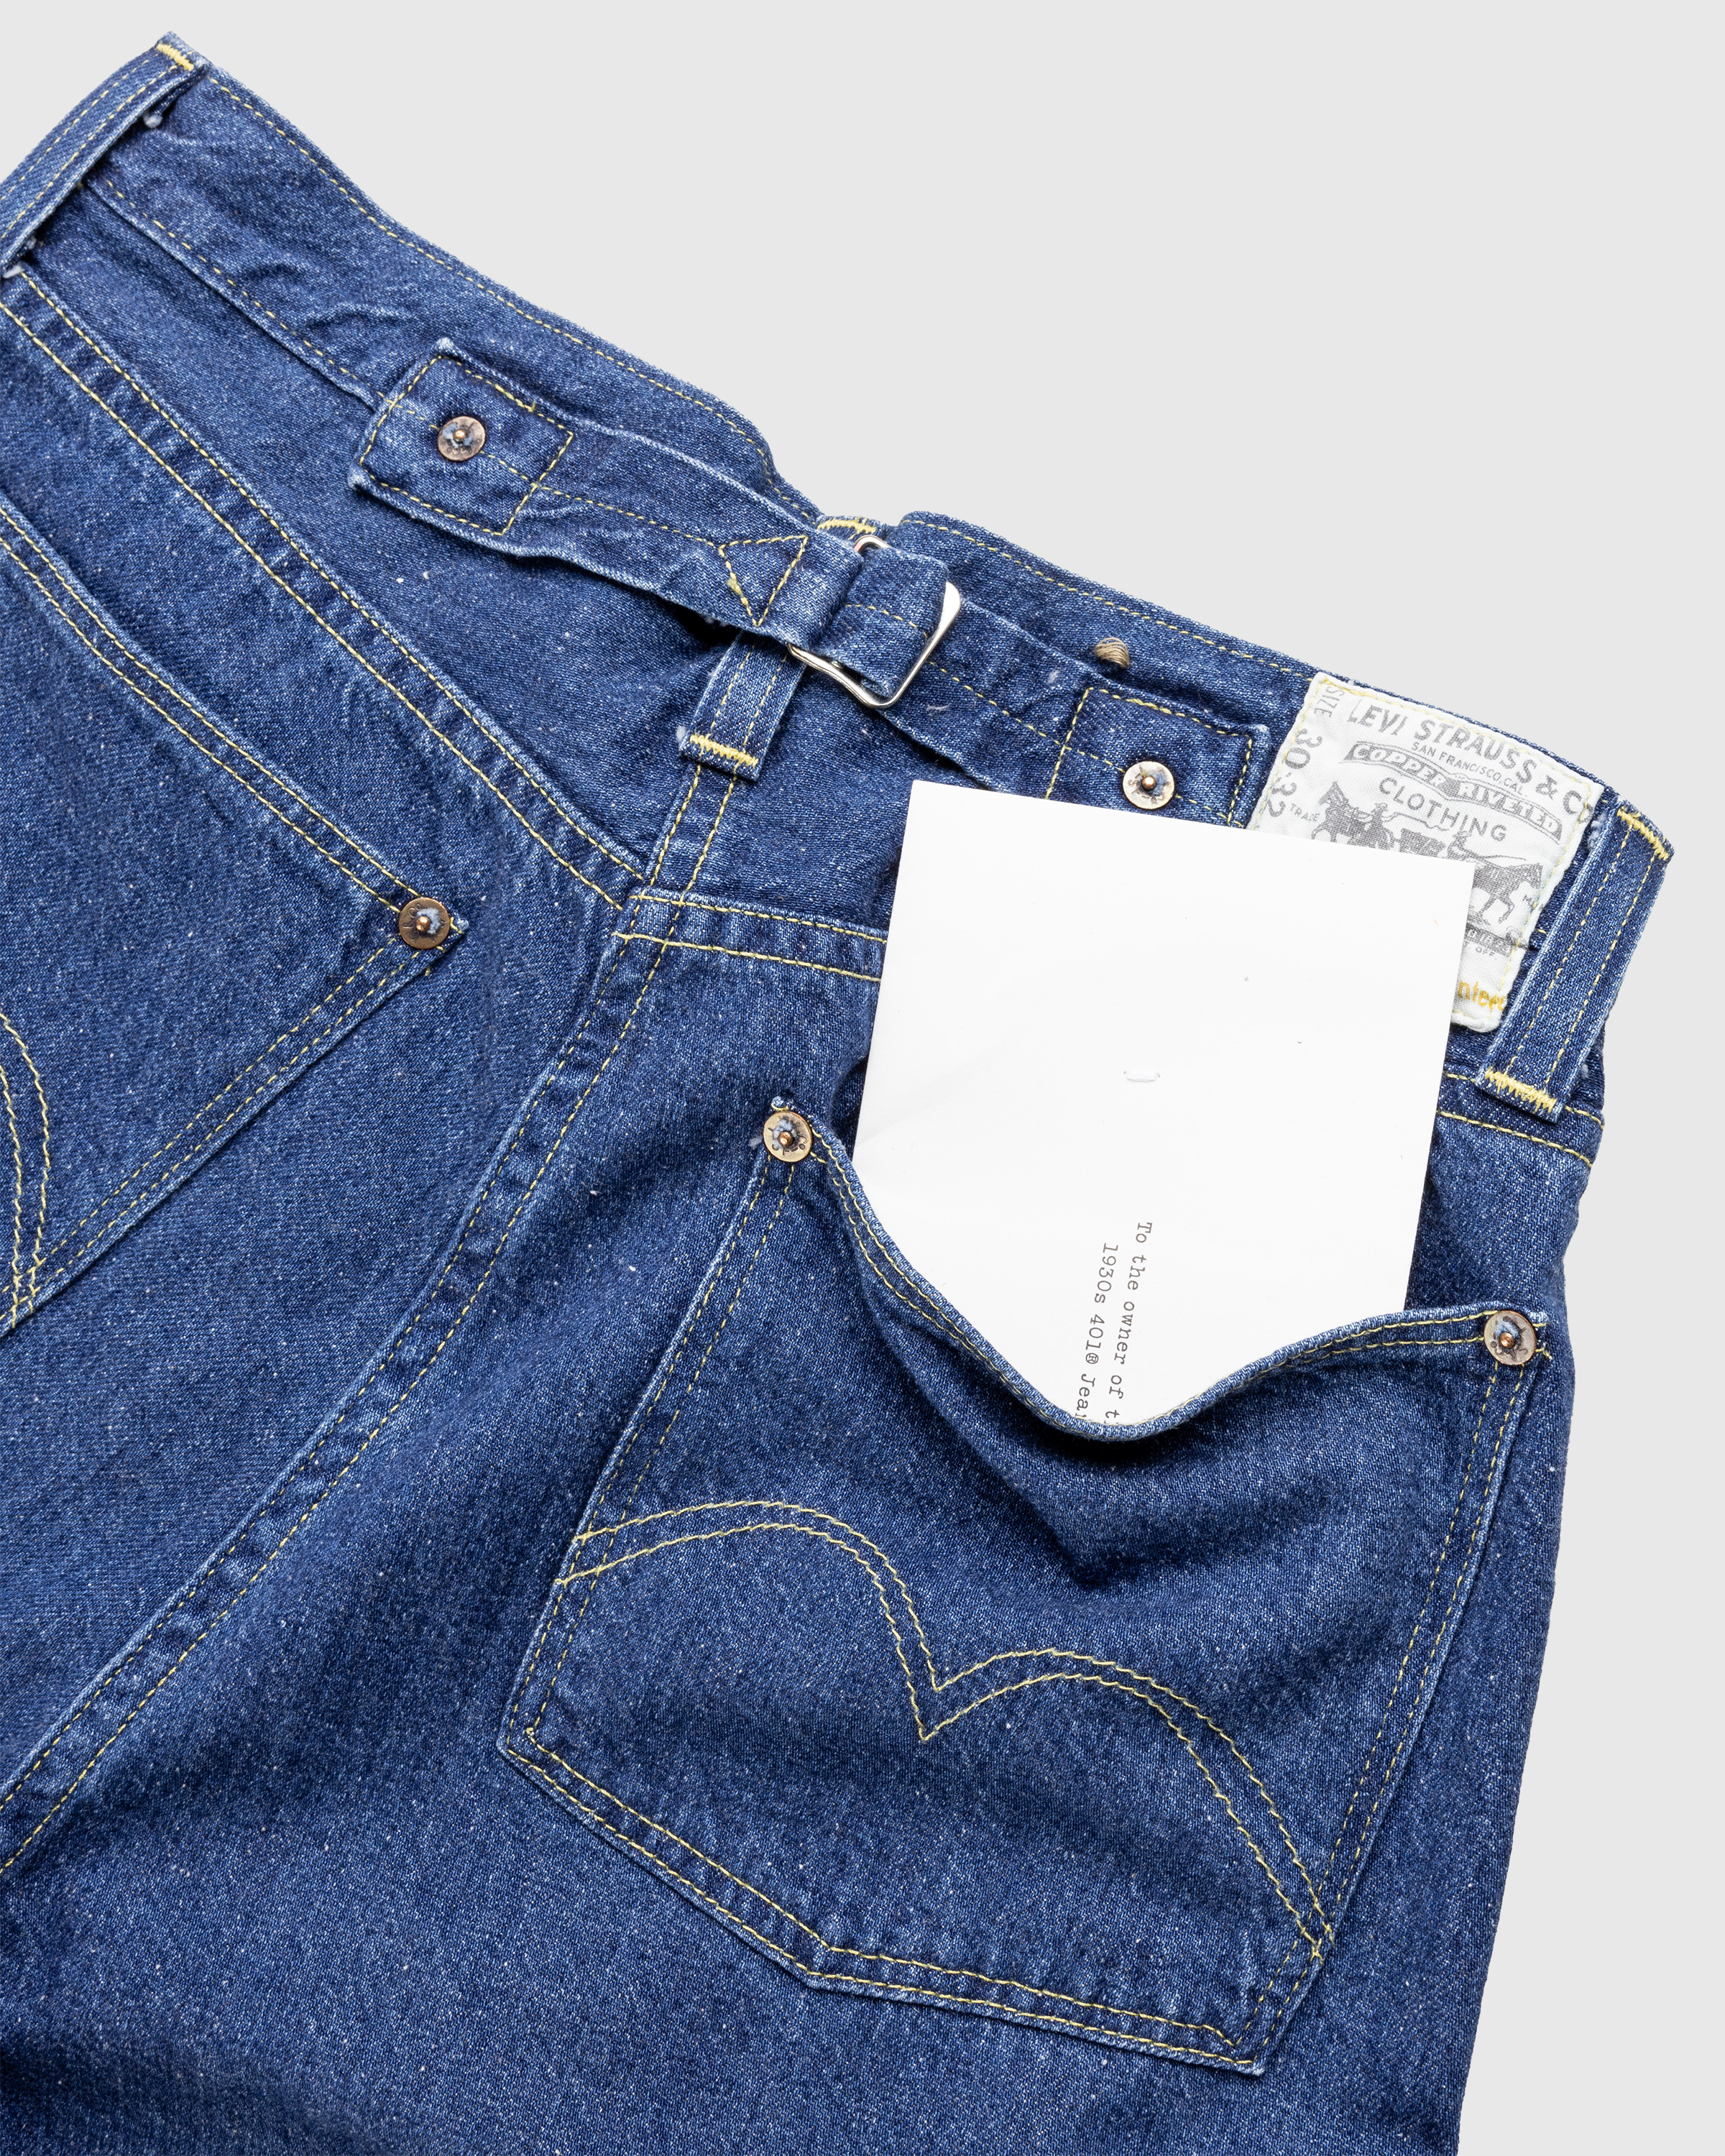 Levi's – 1930s Viola Longacre 401 Jeans Rinsed Blue - Denim - Blue - Image 7